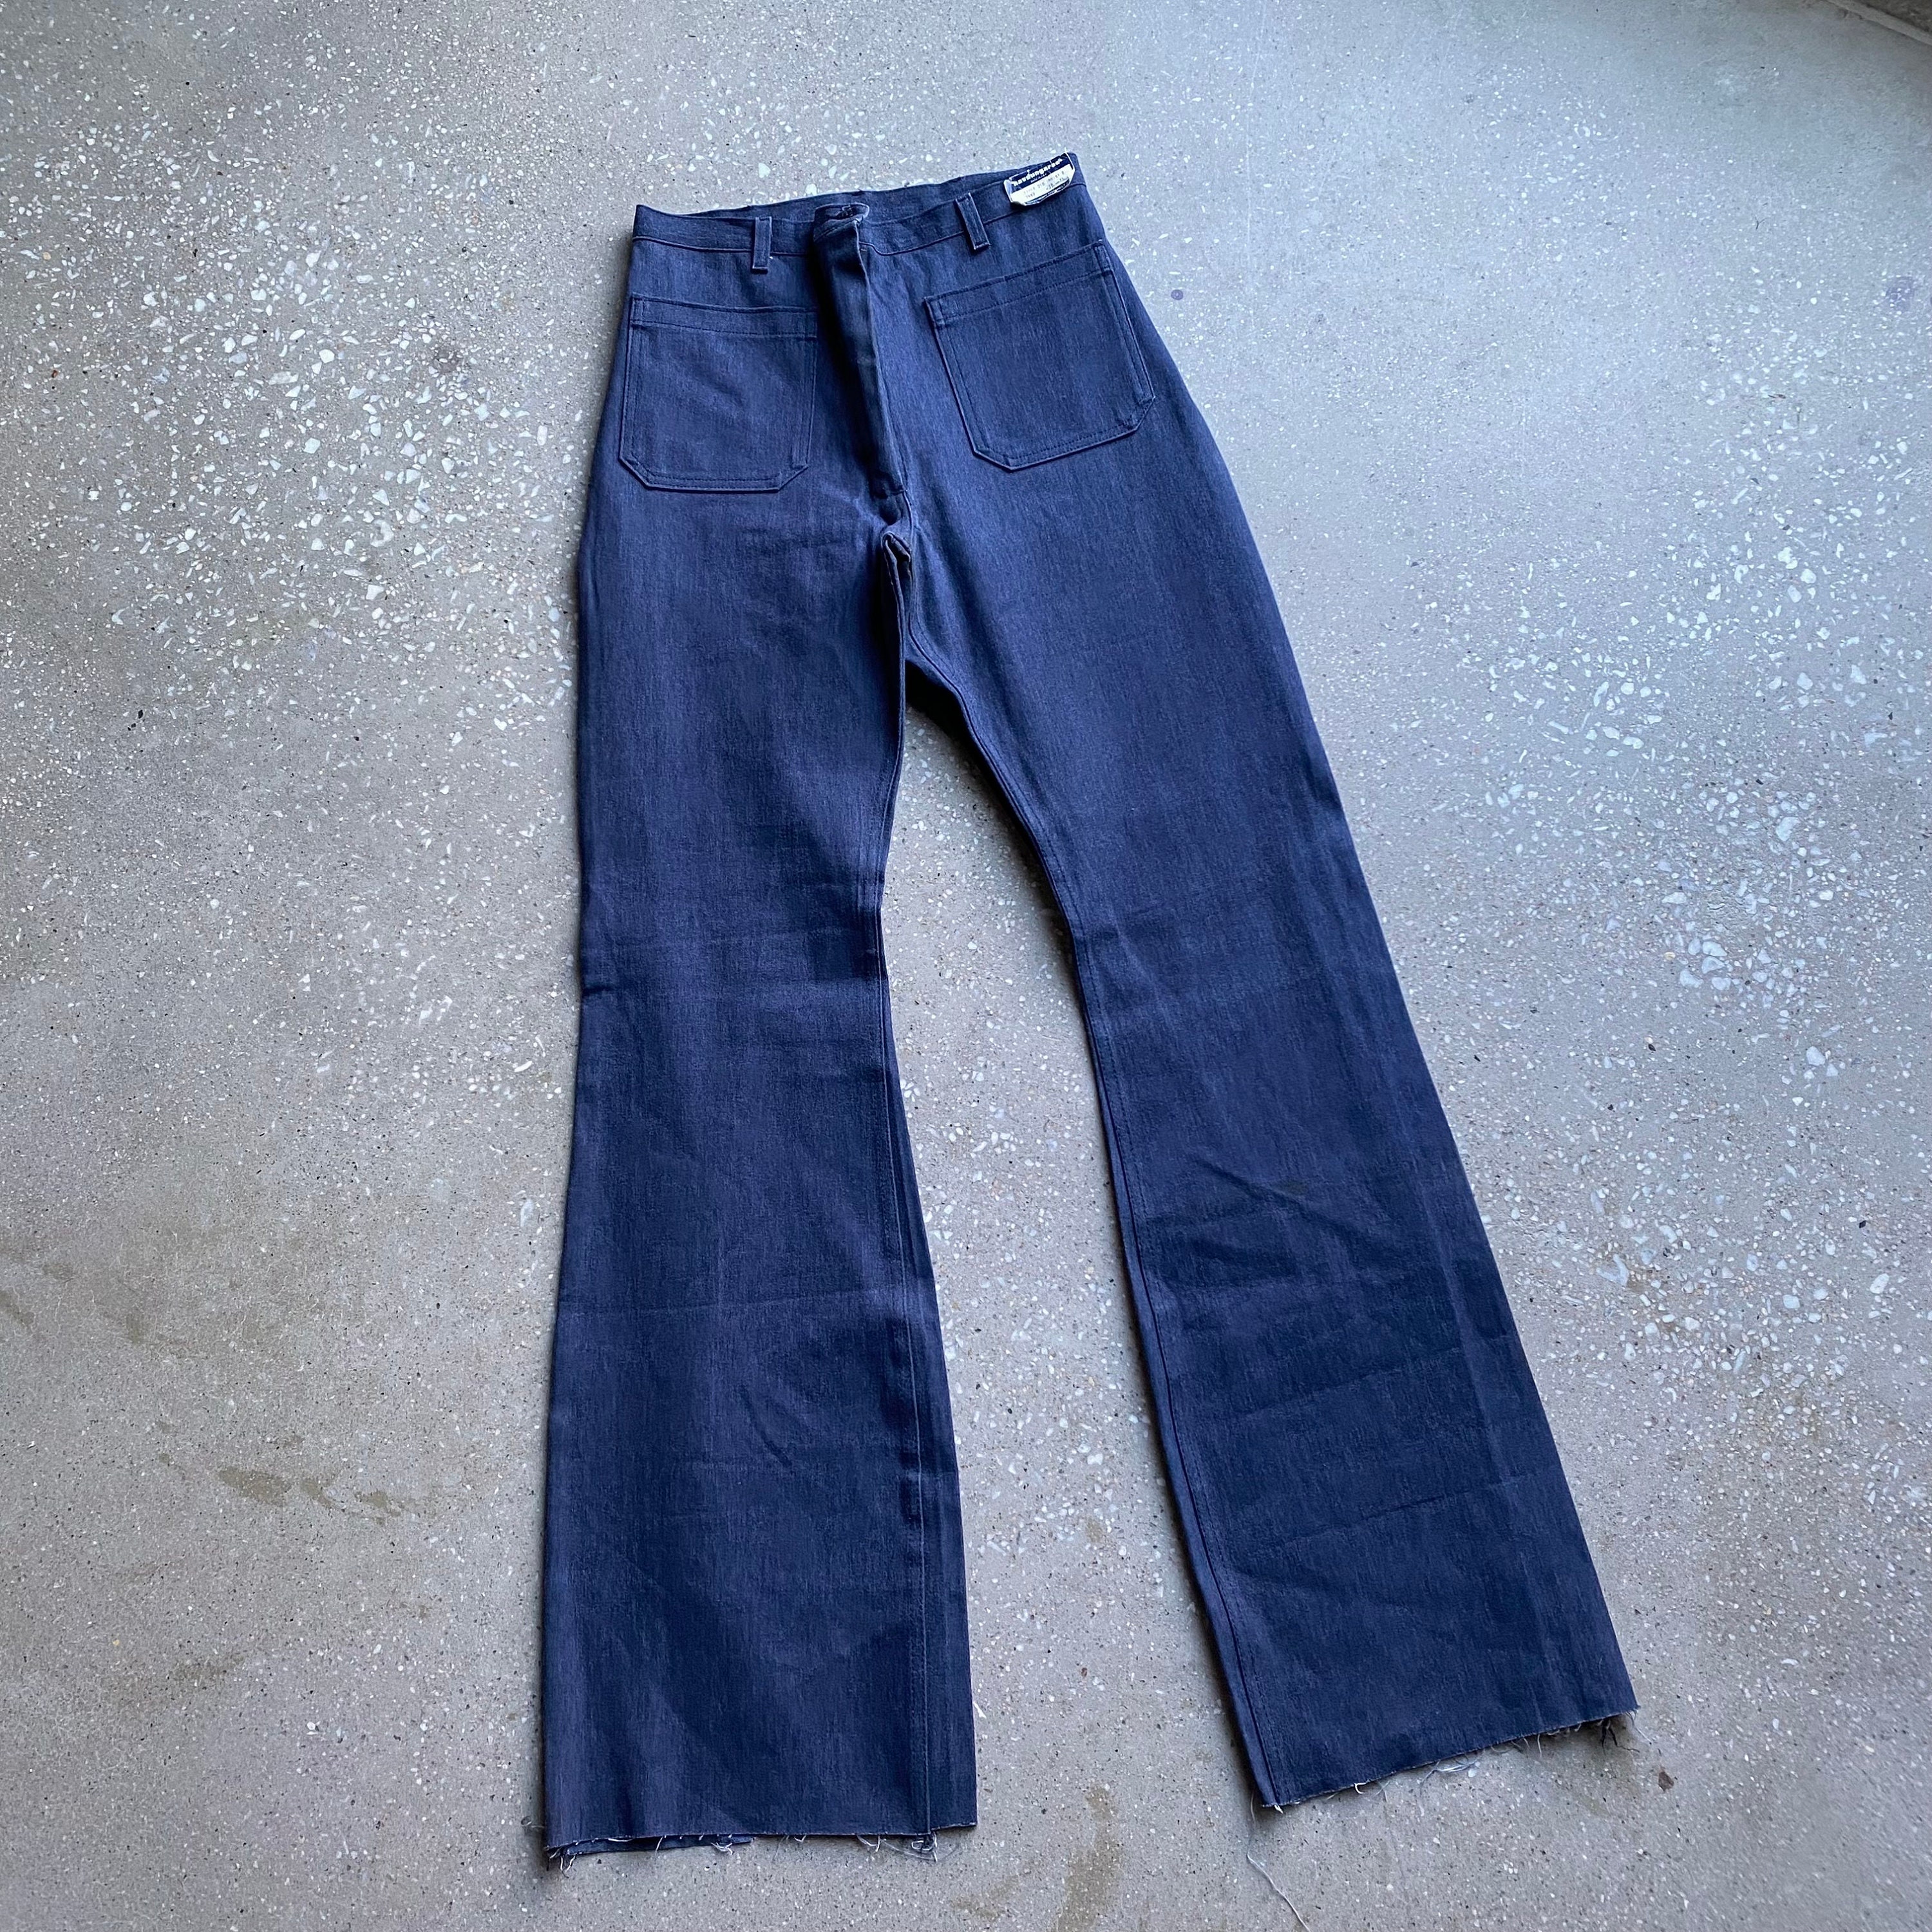 Vintage Navy Jeans / Vintage Sailor Denim Jeans / Wide Leg